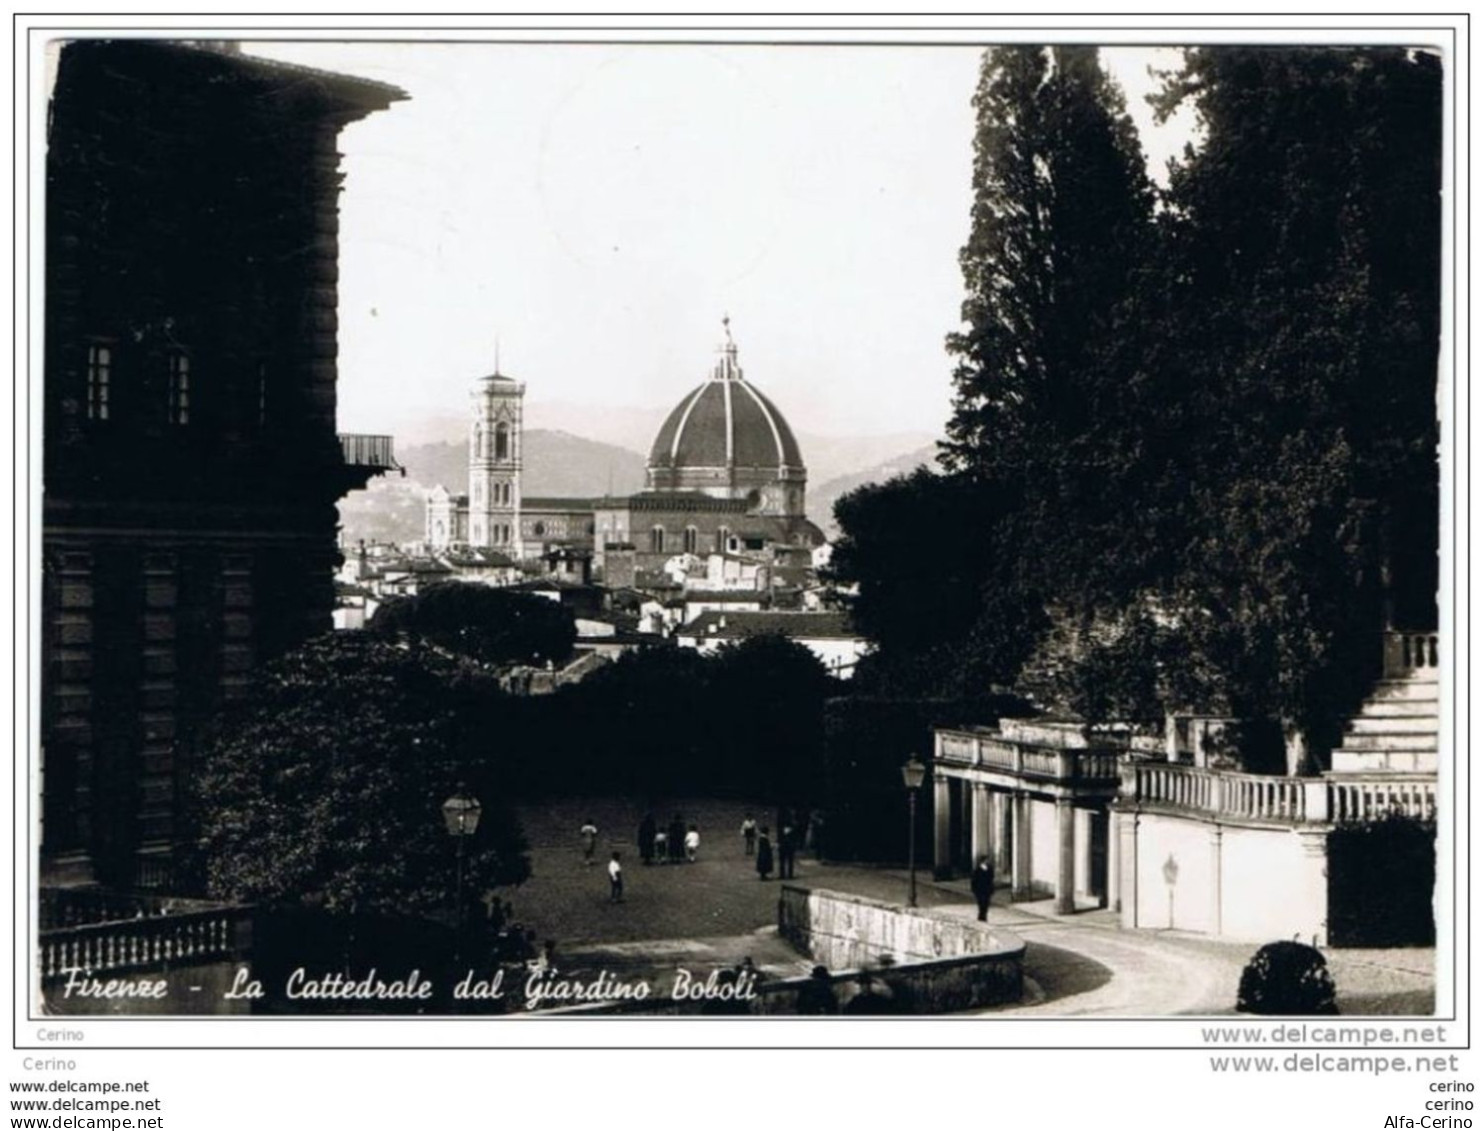 FIRENZE:  LA  CATTEDRALE  DAL  GIARDINO  BOBOLI  -  F.LLO  TOLTO  -  FOTO  -  FG - Churches & Convents